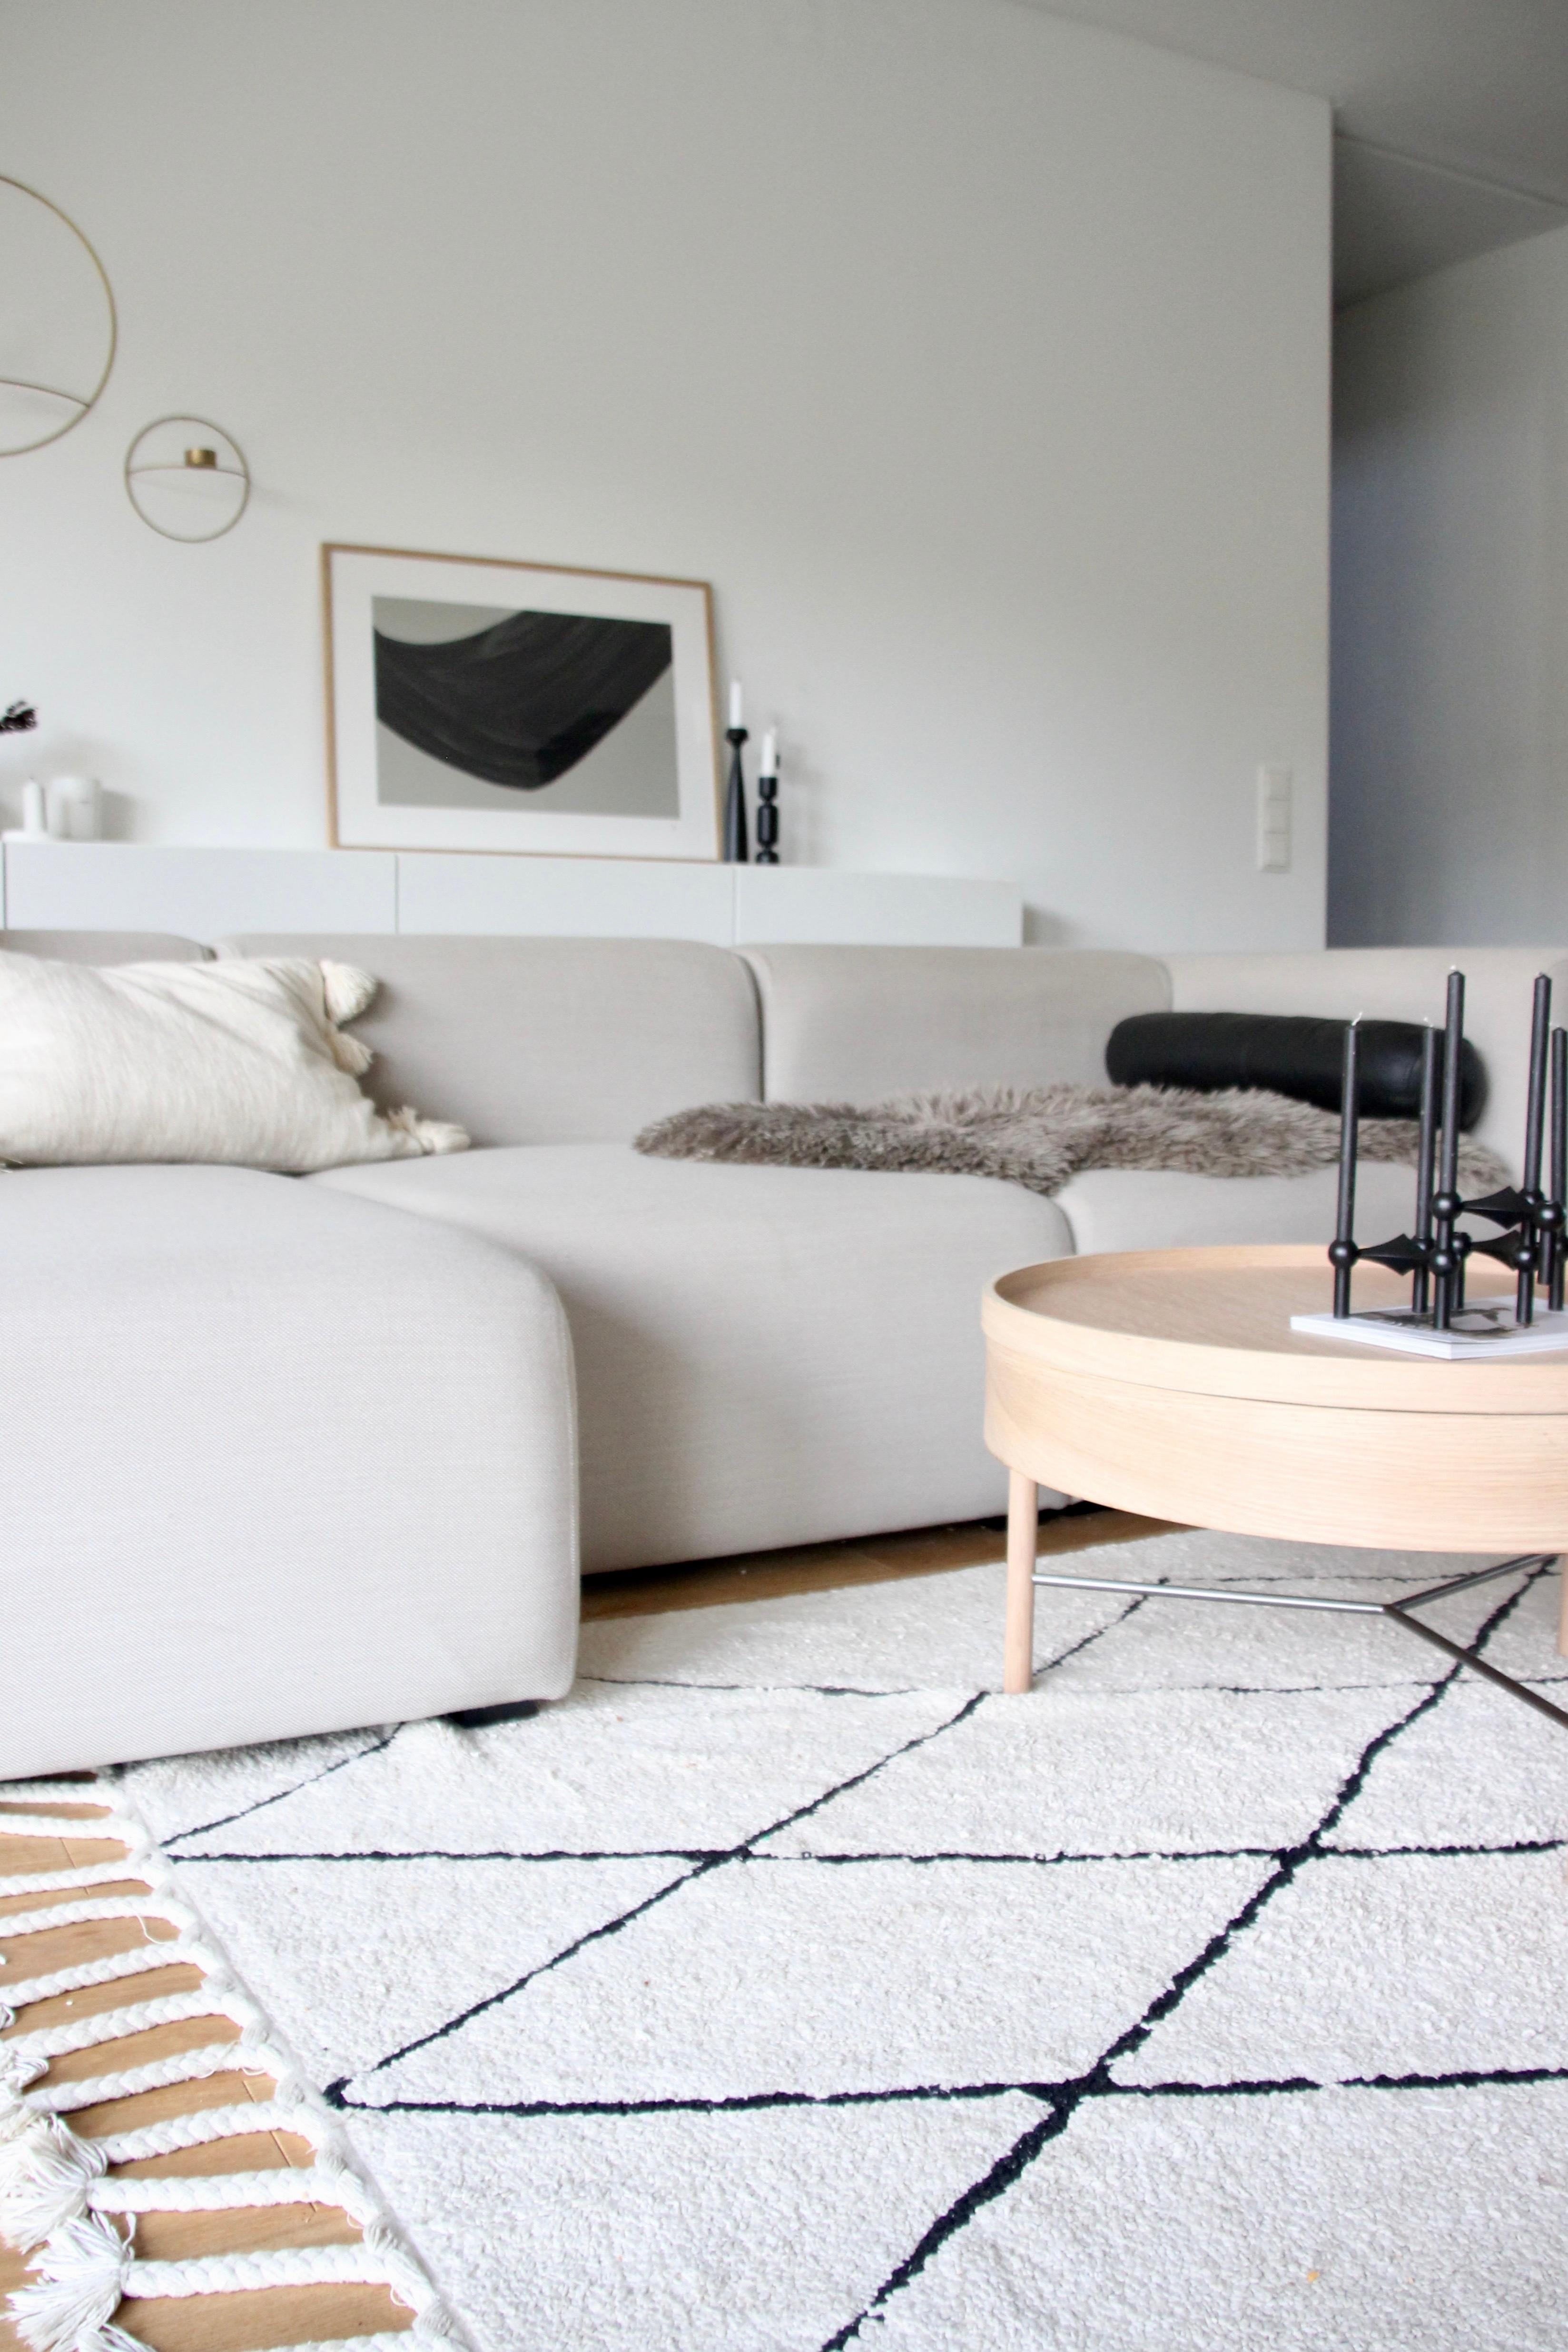 Lieblingsplatz #couchstyle #couchliebe #wohnzimmer